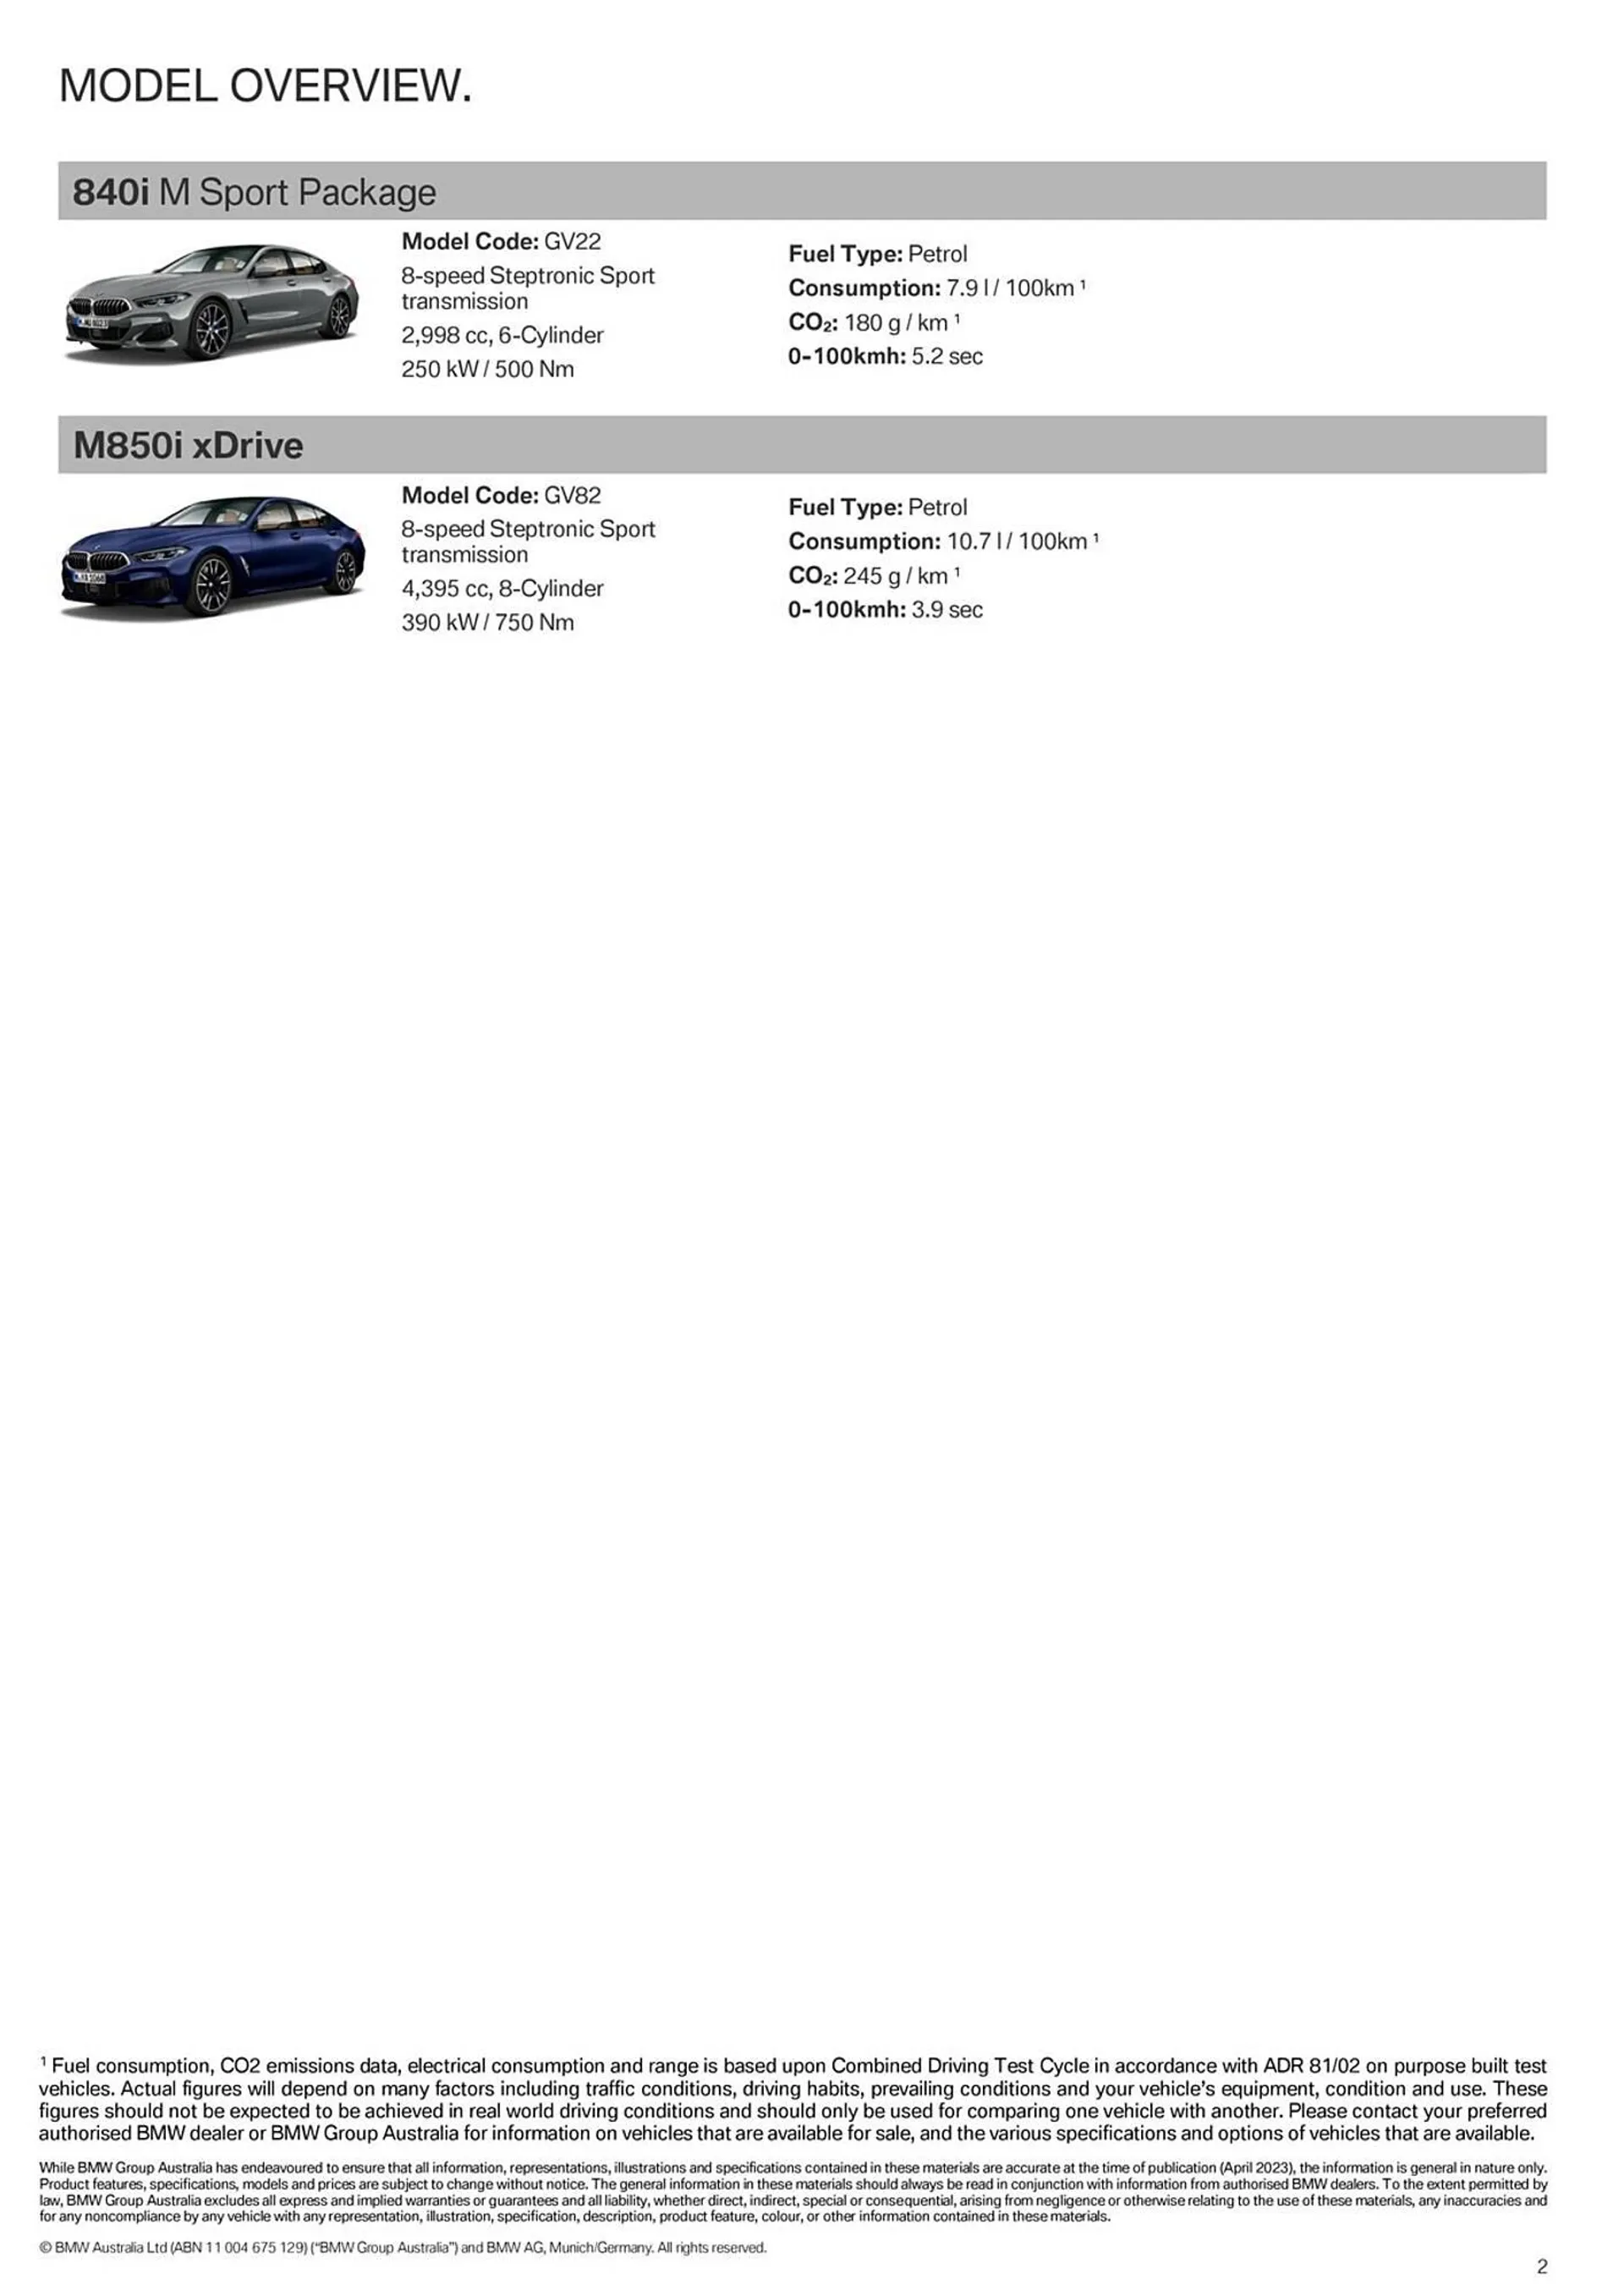 BMW catalogue - 2